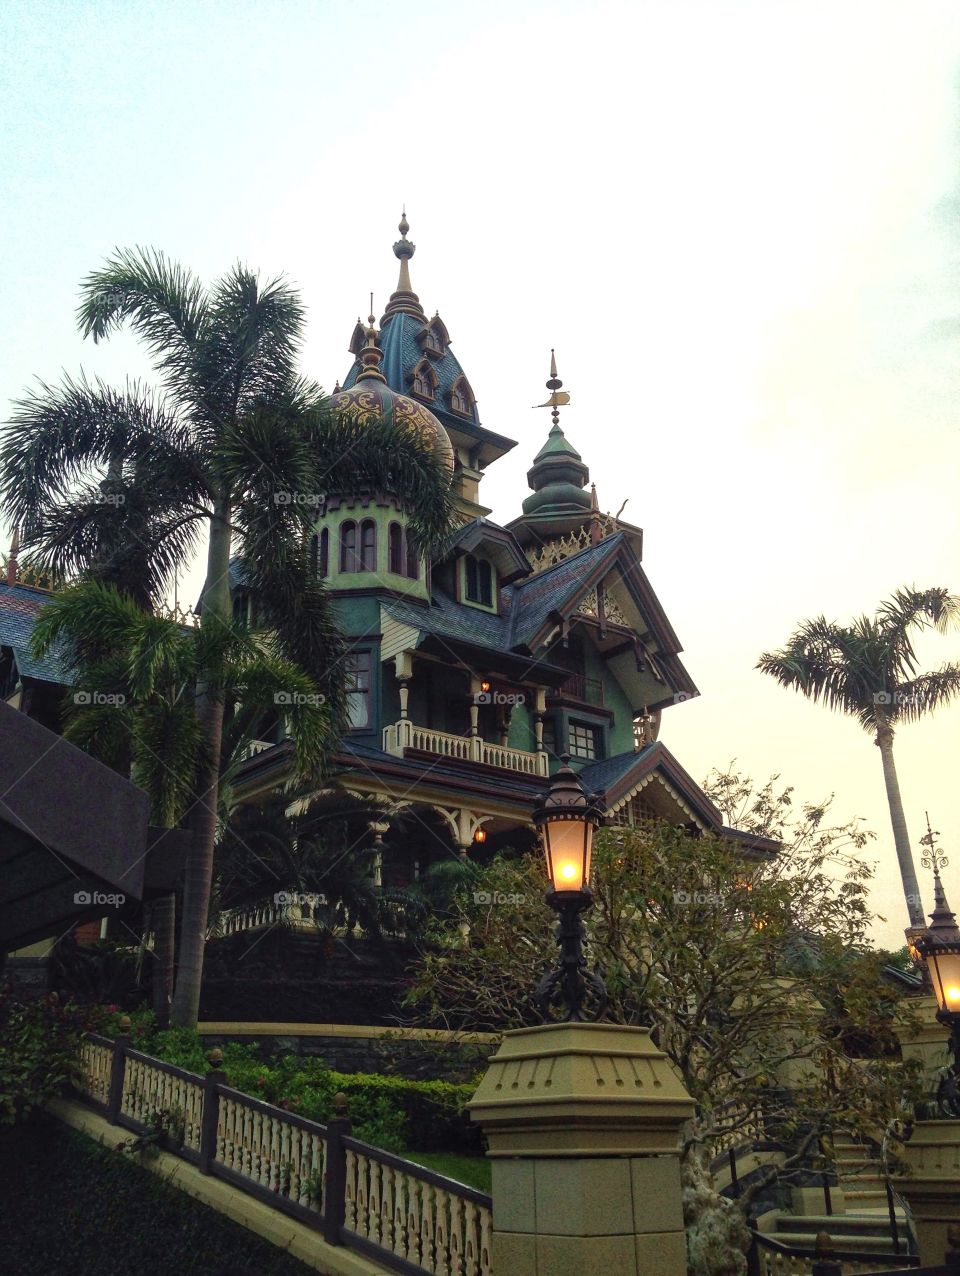 Fairy tale house